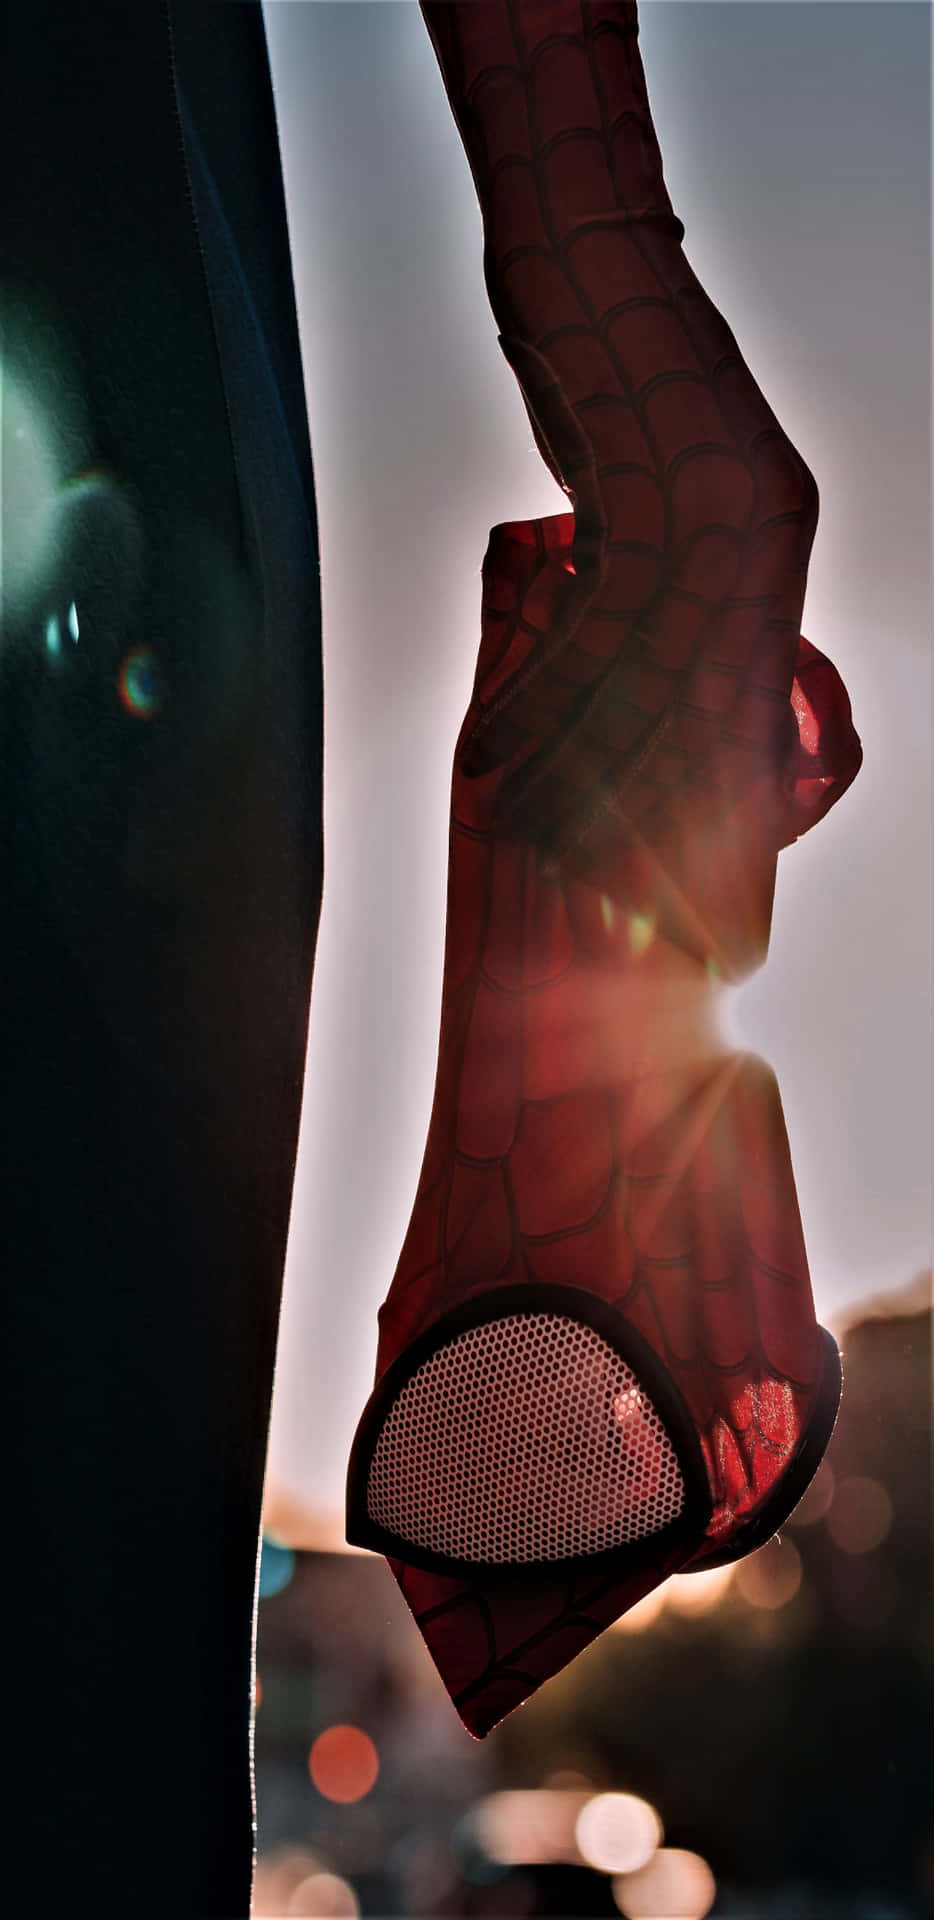 Pixel3xl Marvel Bakgrund Med Spidermans Mask.